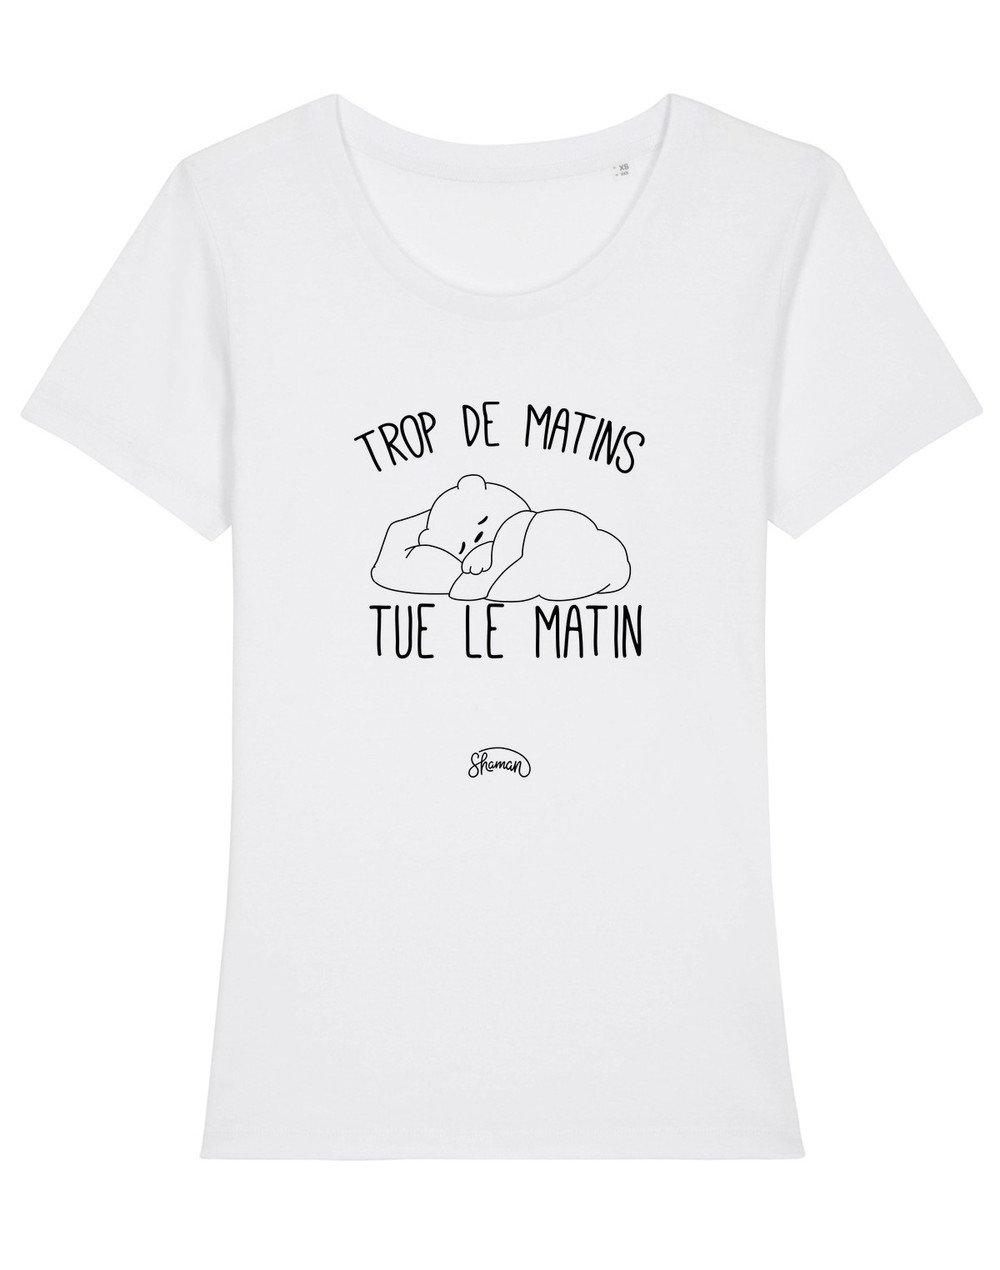 Tshirt TROP DE MATINS TUE LE MATIN